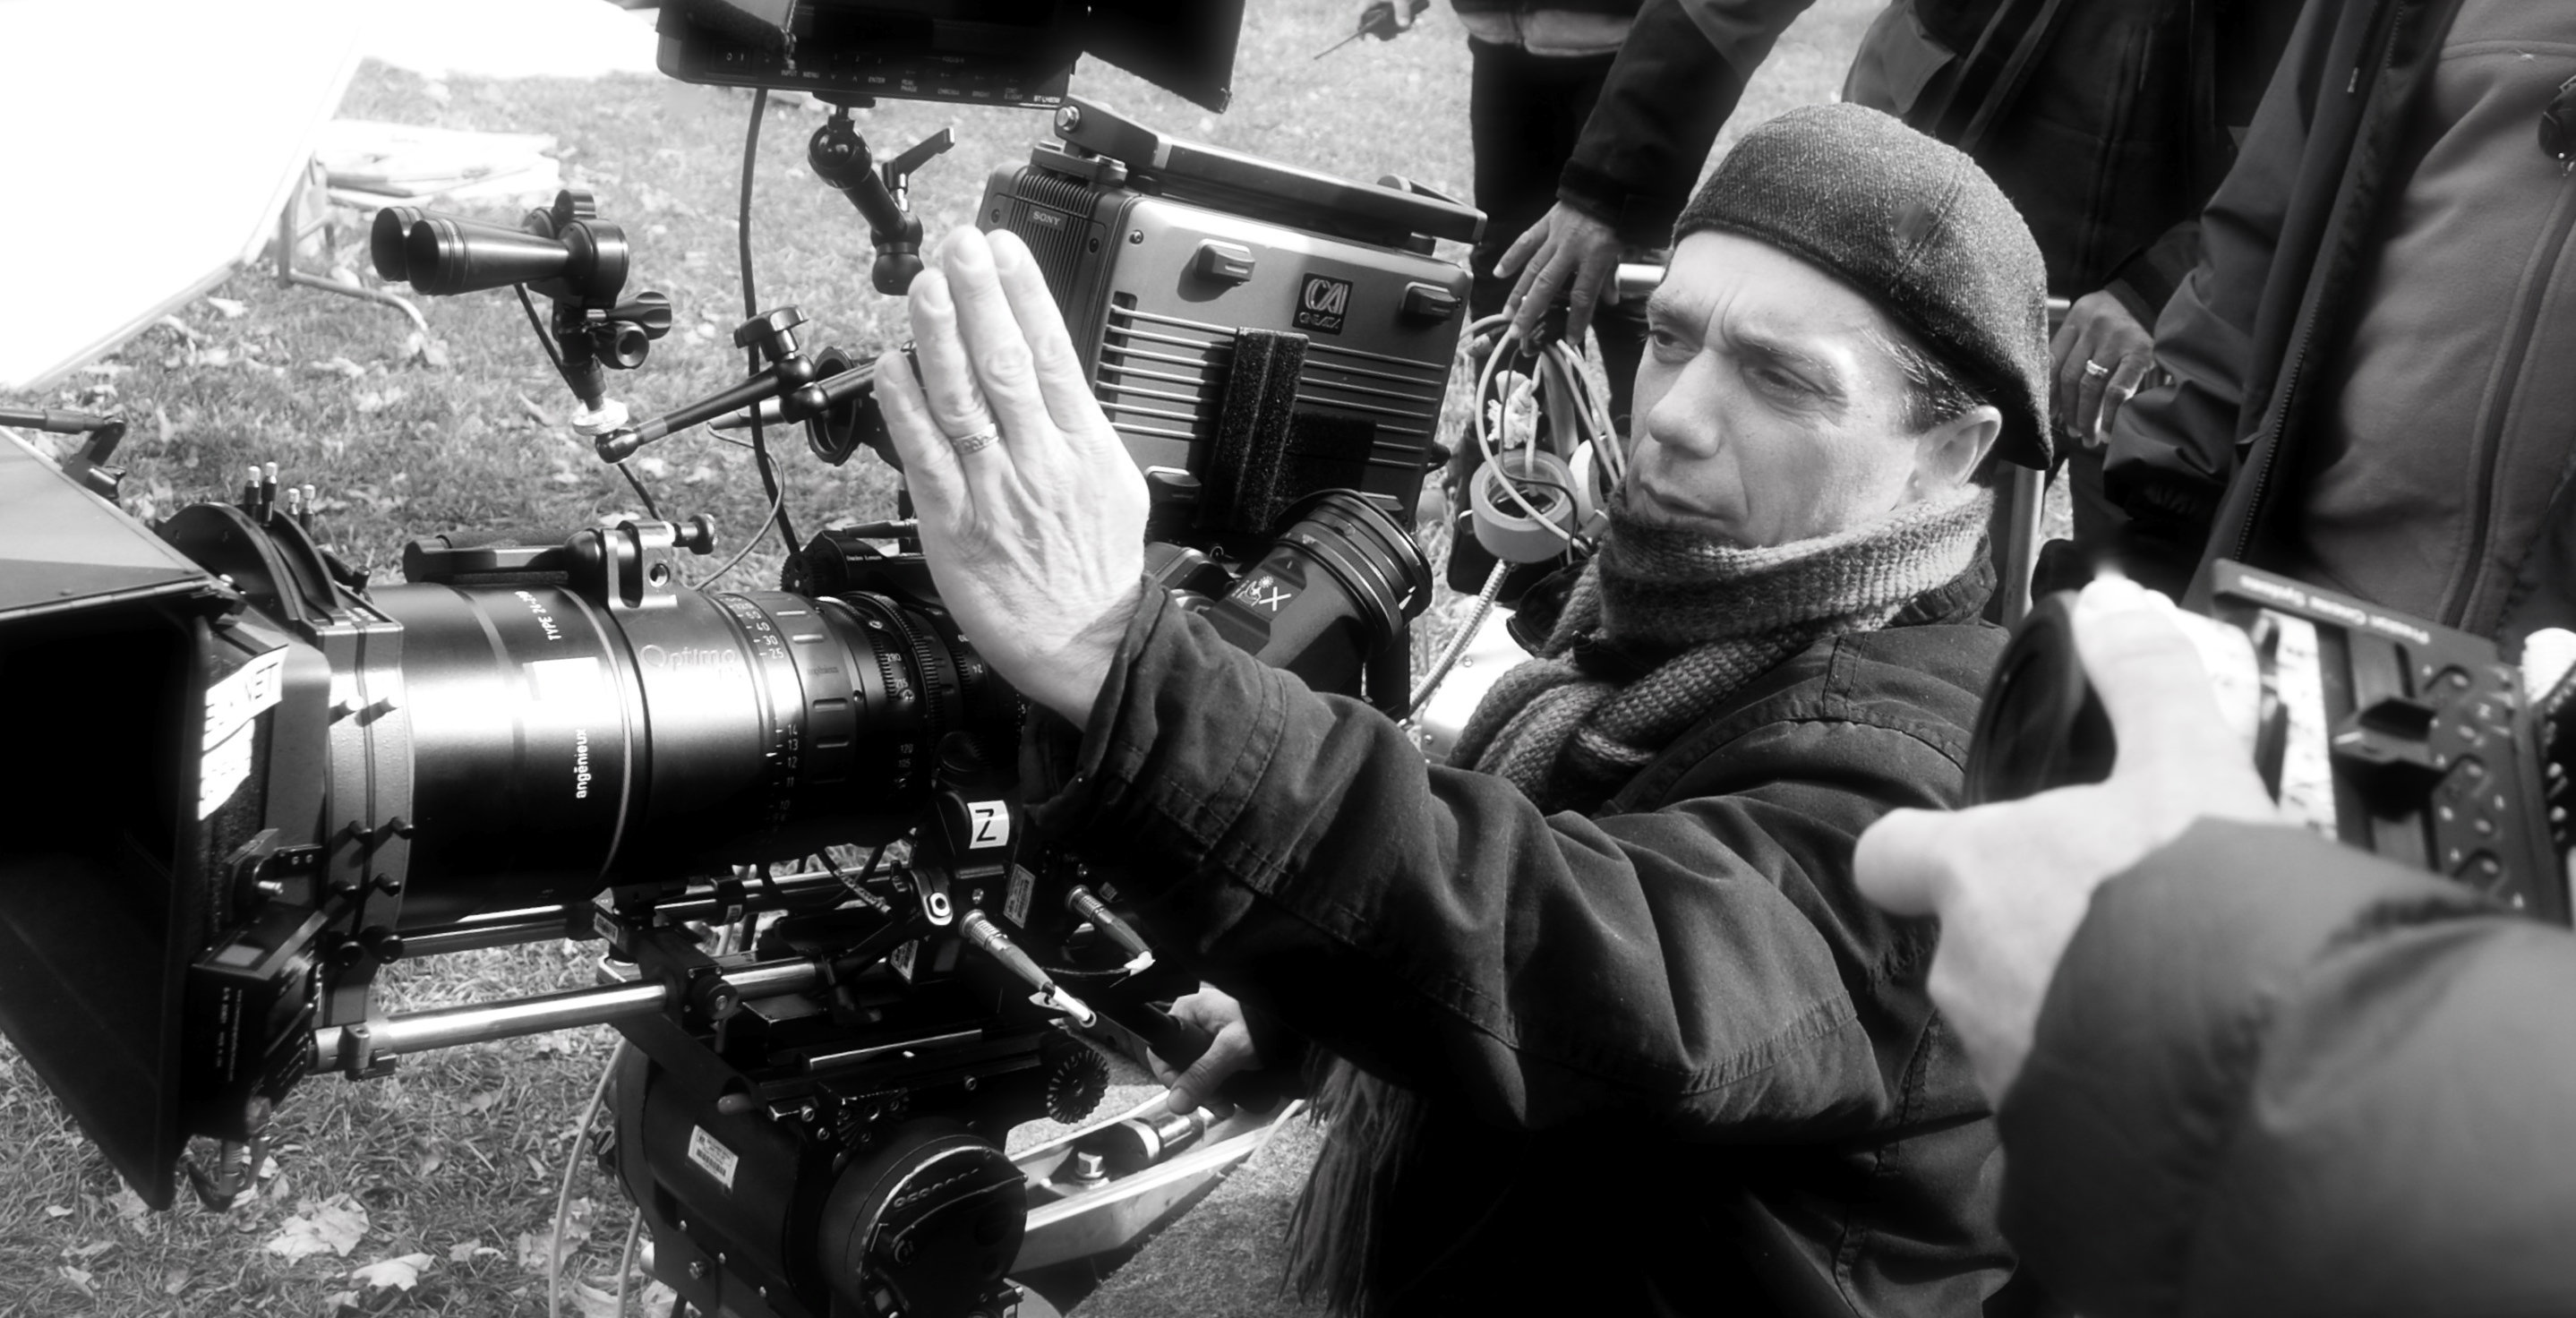 Director of Photography John Samaras